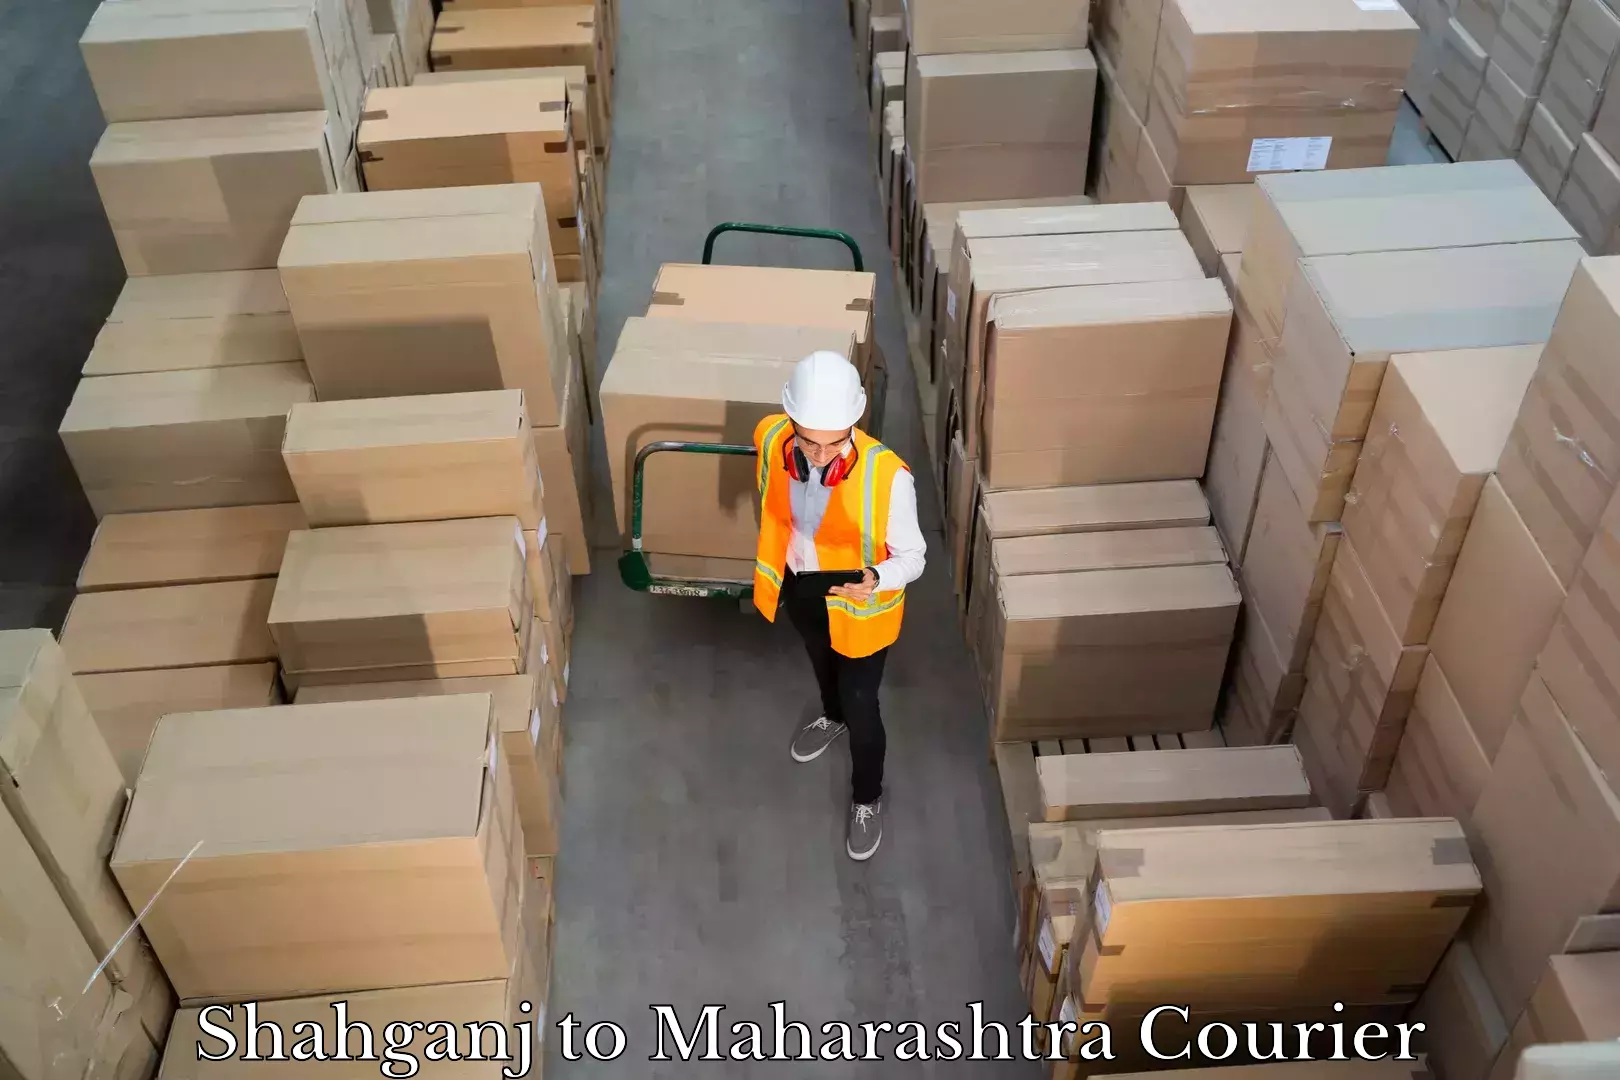 Luggage transport company Shahganj to Maharashtra